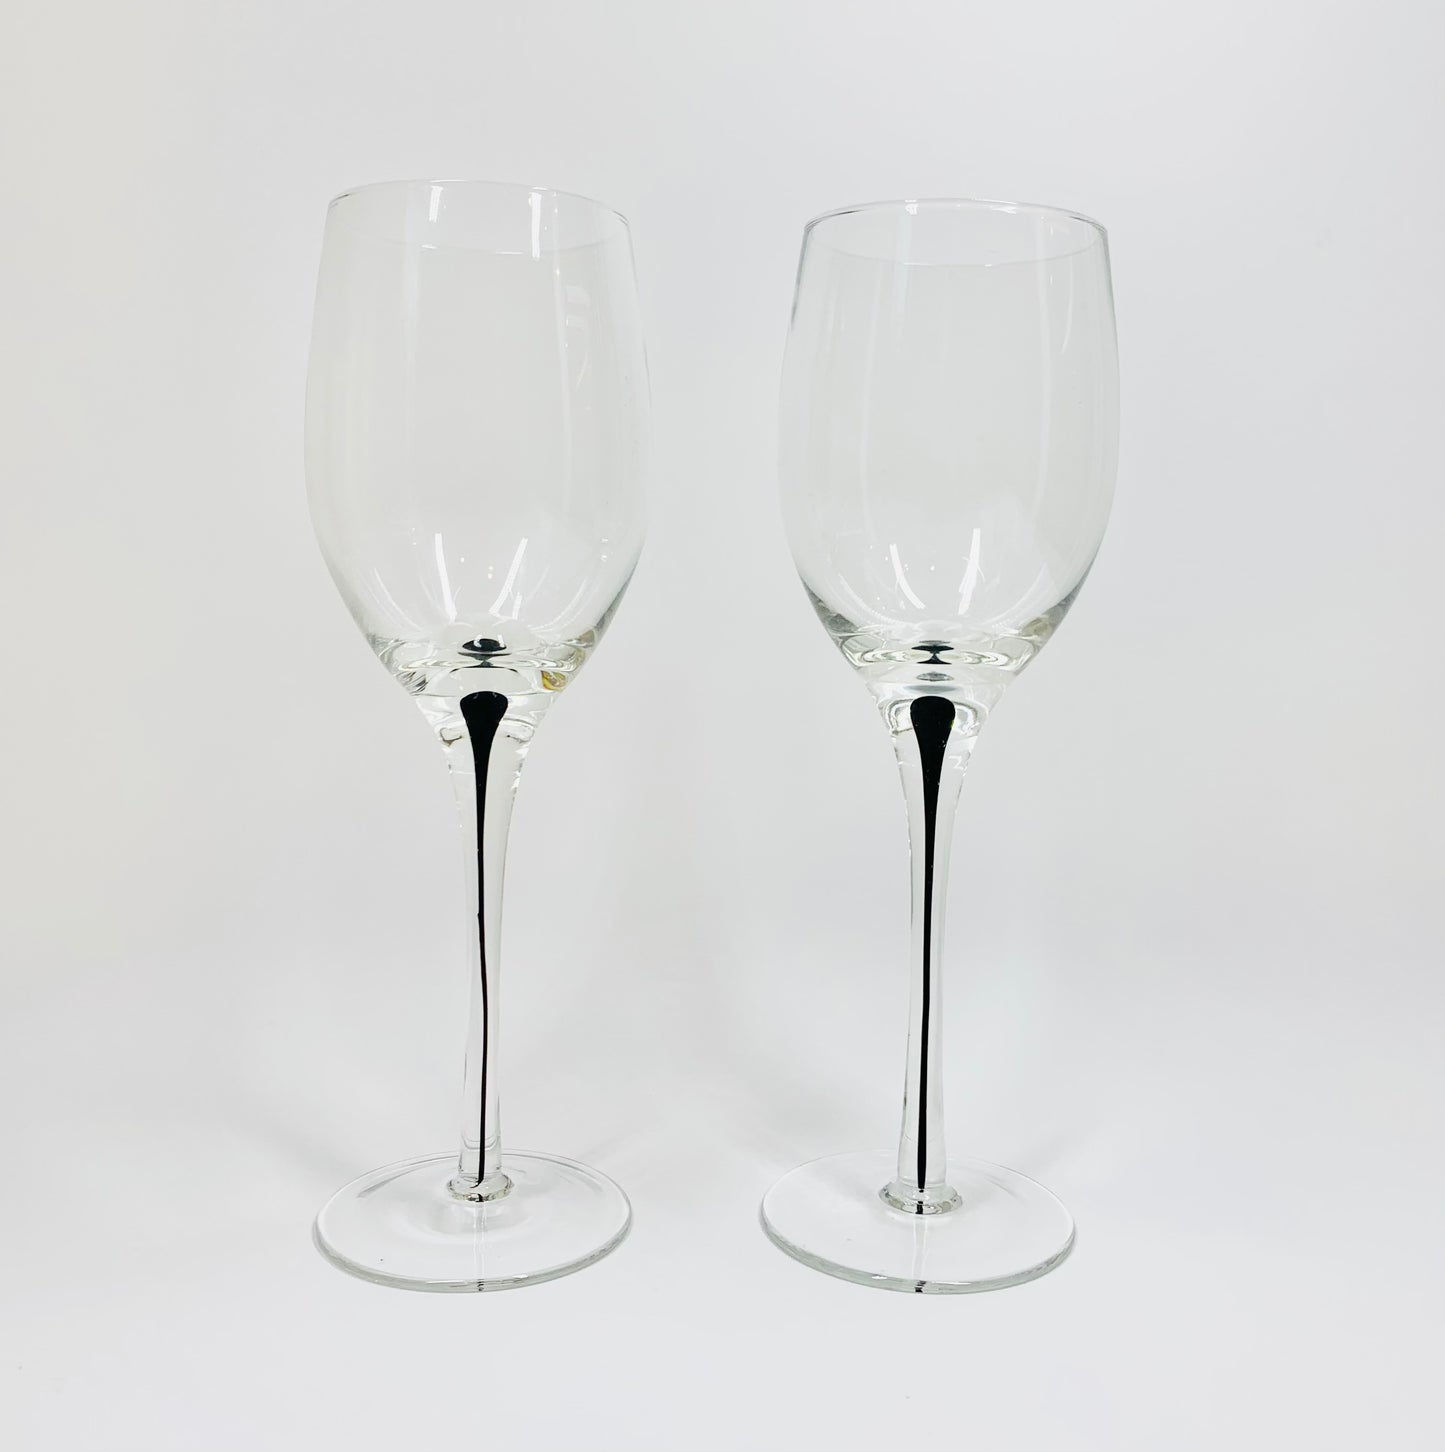 Vintage Kosta Boda hand made art glass wine glasses with encased black ink